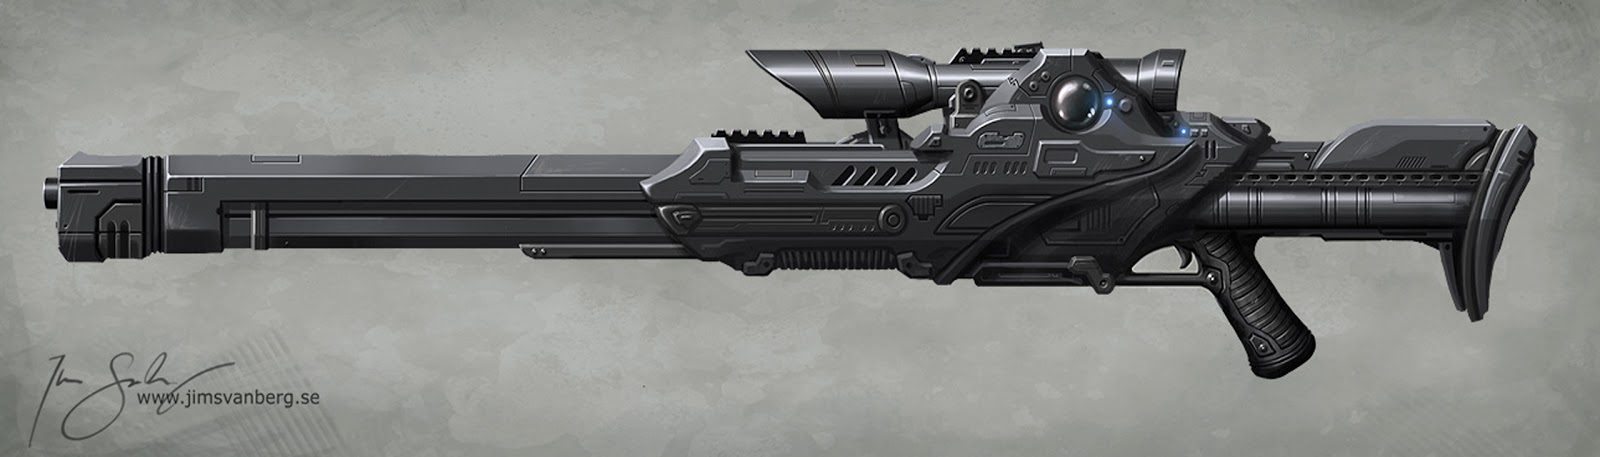 sci+fi+nova+spectre+specter+spec-ops+sniper+rifle+futuristic+blaster+cannon+concept+design+by_jimsvanberg.jpg